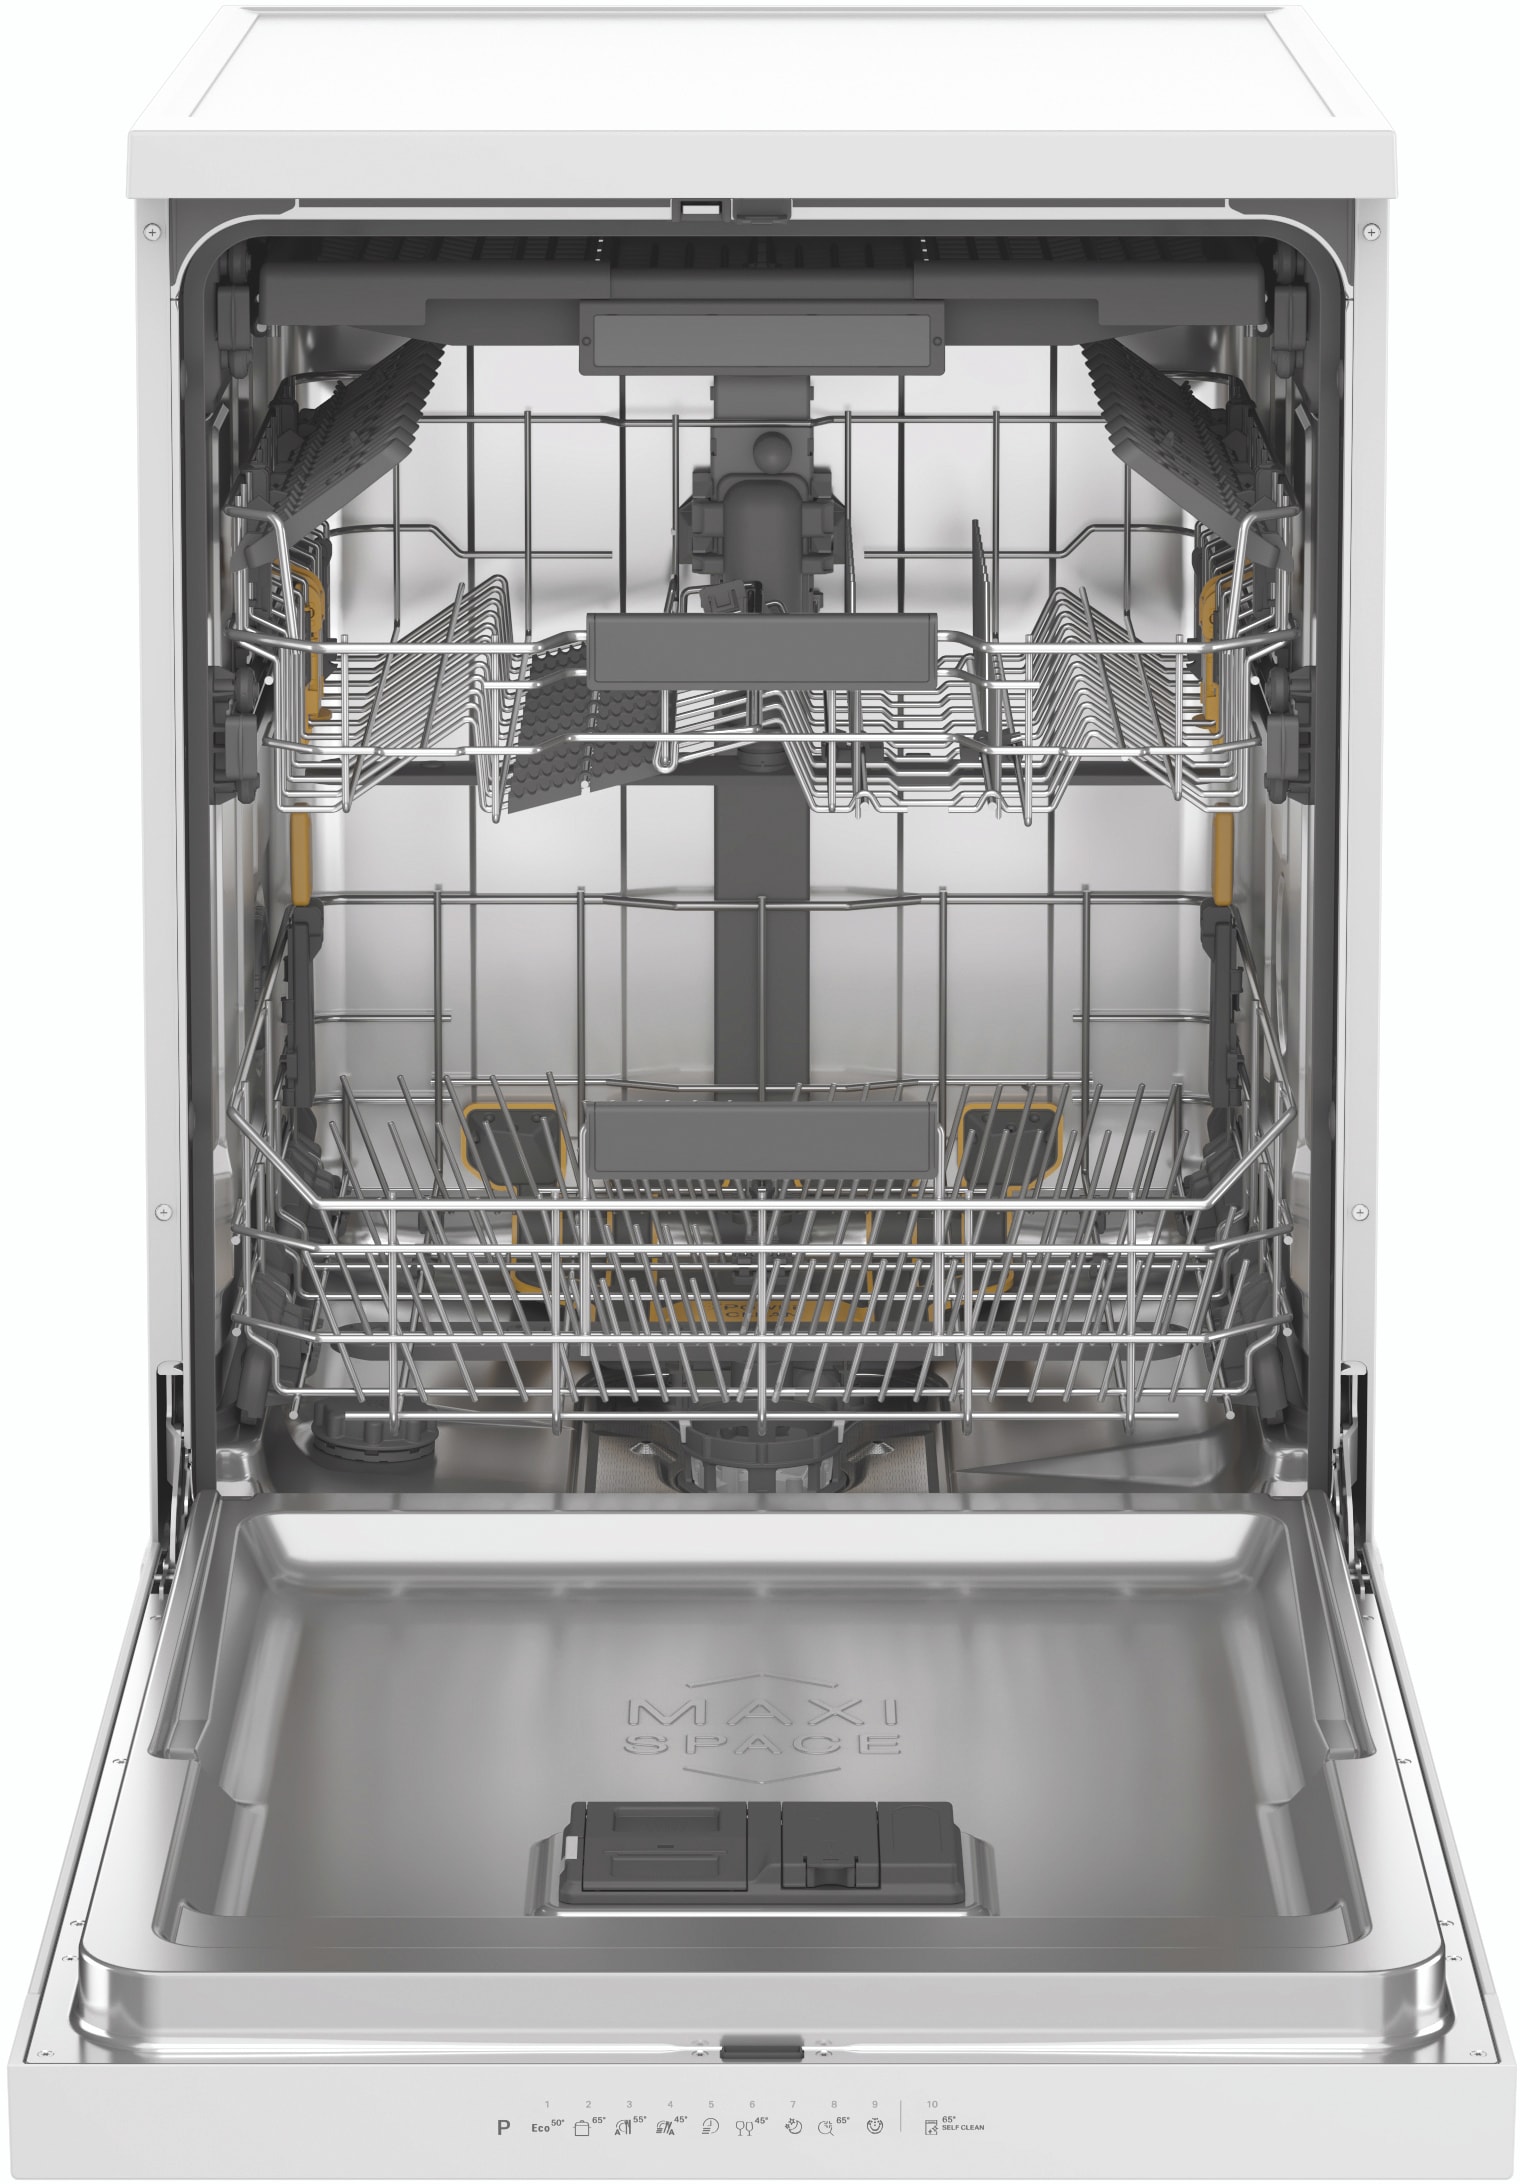 Le nouveau lave-vaisselle MaxiSpace de Whirlpool